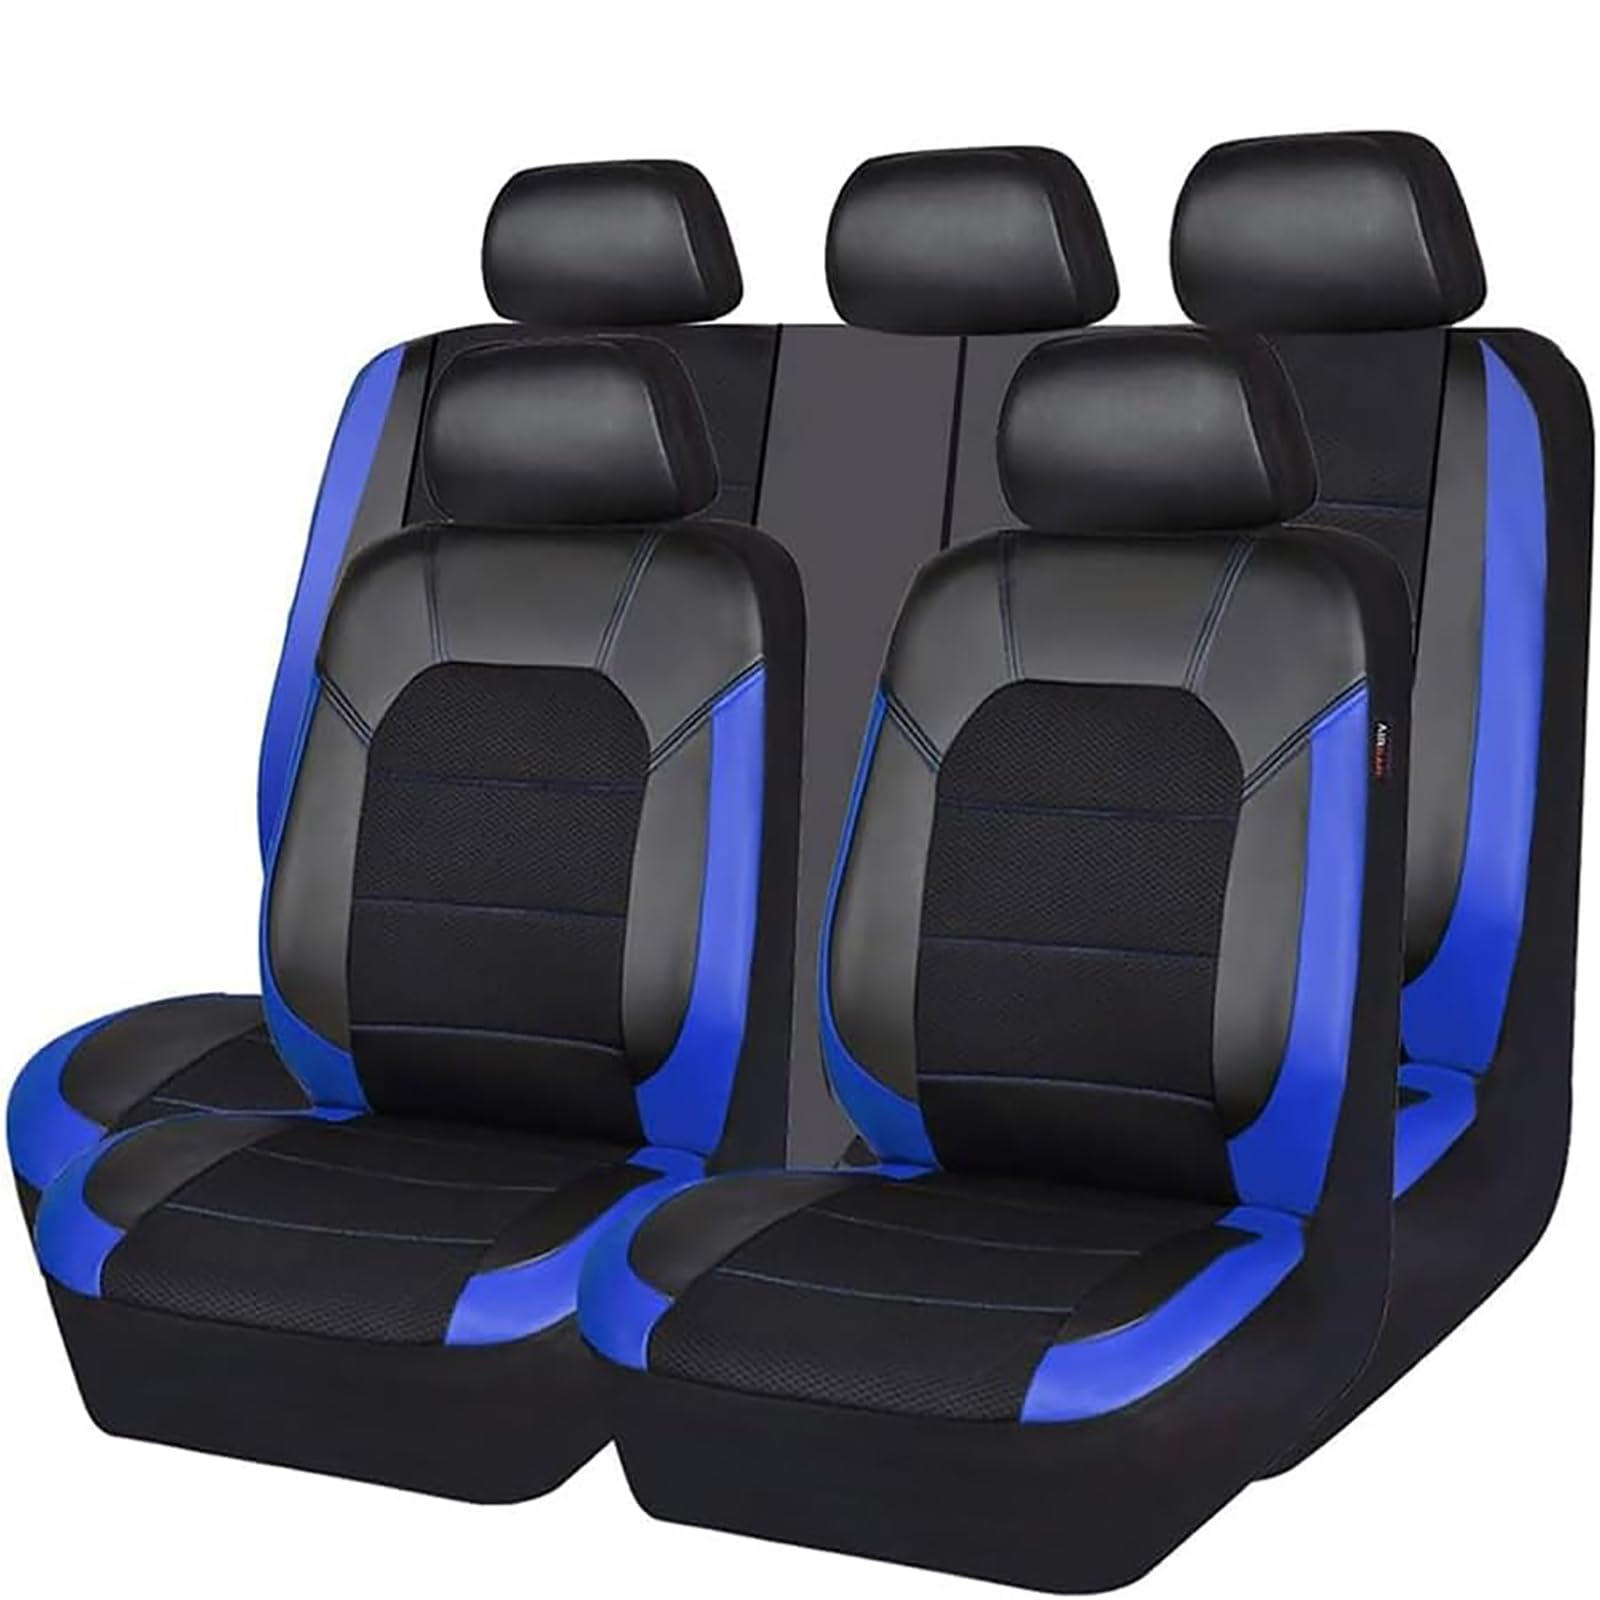 EYHQKRTR Auto Leder Sitzkissen Für VW Golf 2016-2020, 5 Sitzer Full Set SitzbezüGe Schonbezug Vorne Rückbank Sitzschutz Compatible Airbag Innenraum Zubehör,C/Blue von EYHQKRTR